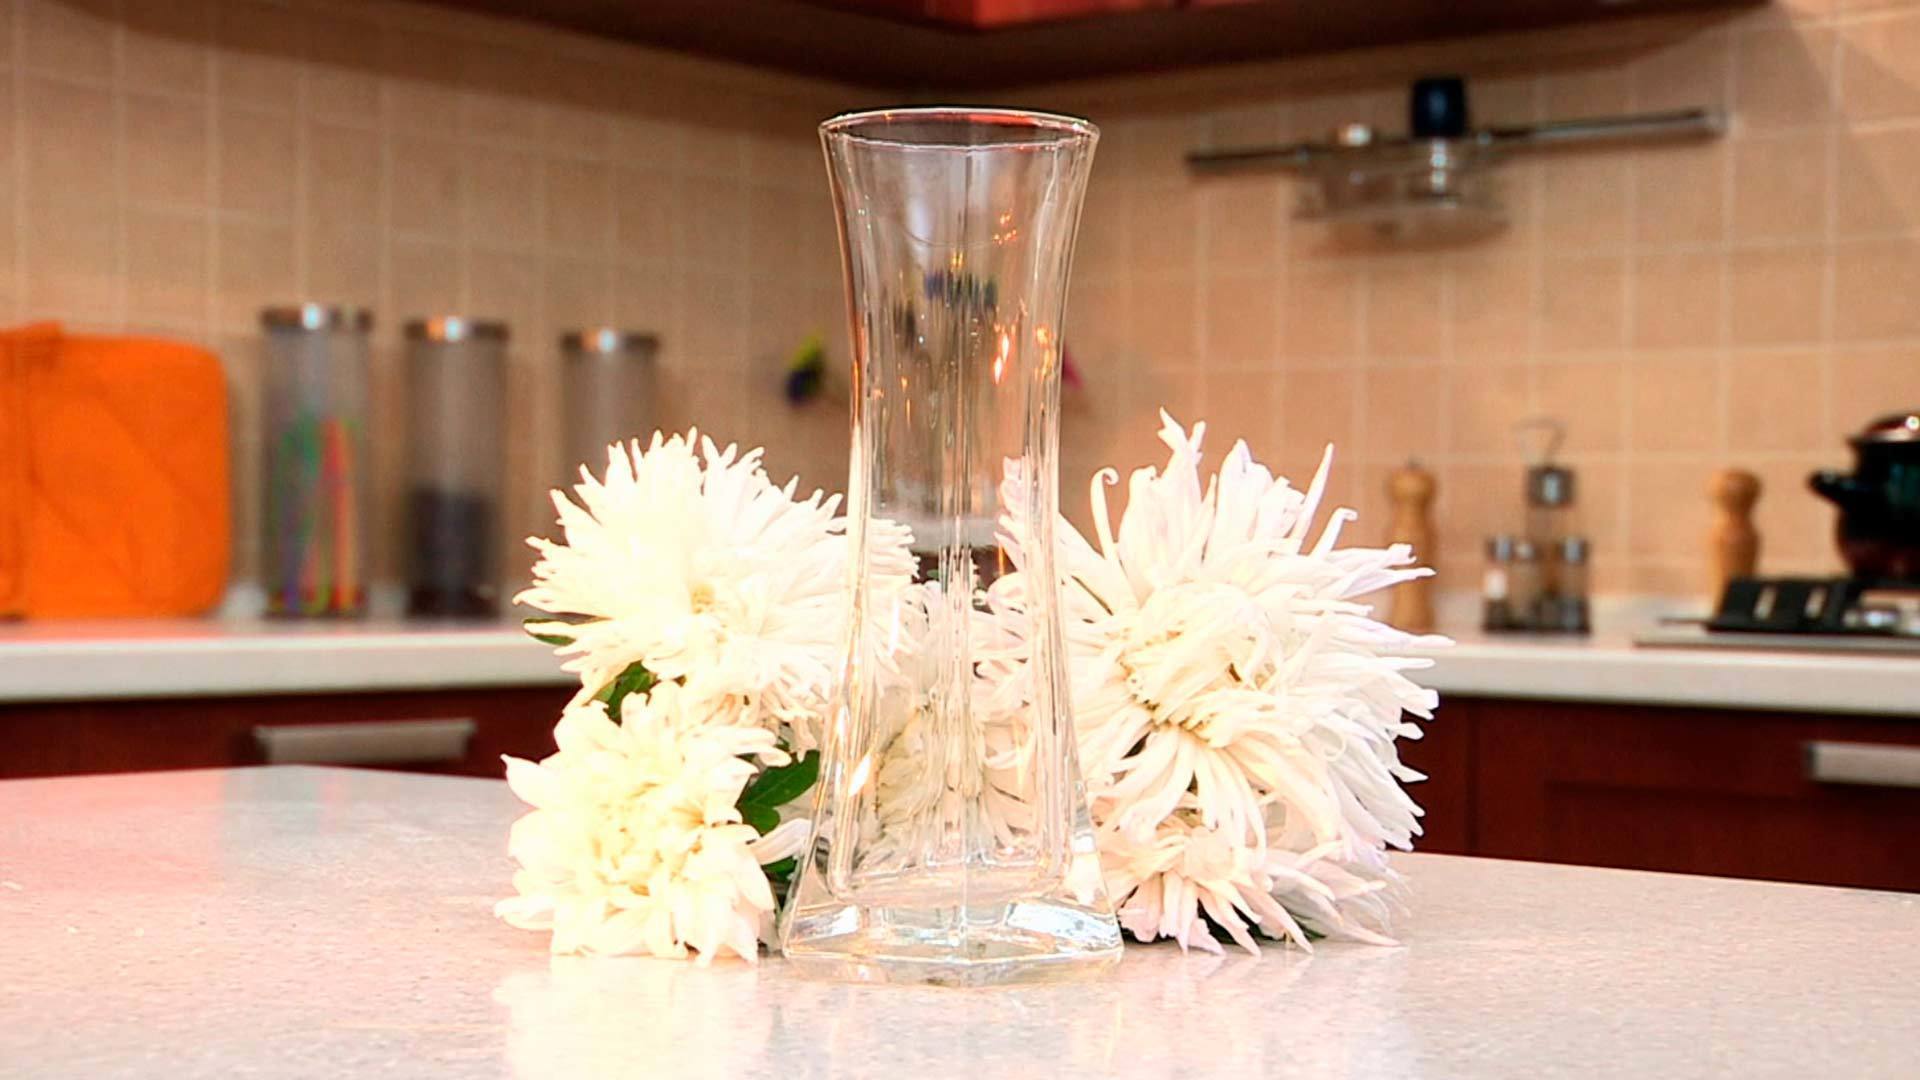 Отмыть вазу от налета. Помыть вазу. Отмывает вазу. Вымыть вазу сложной формы. Ваза с налетом.